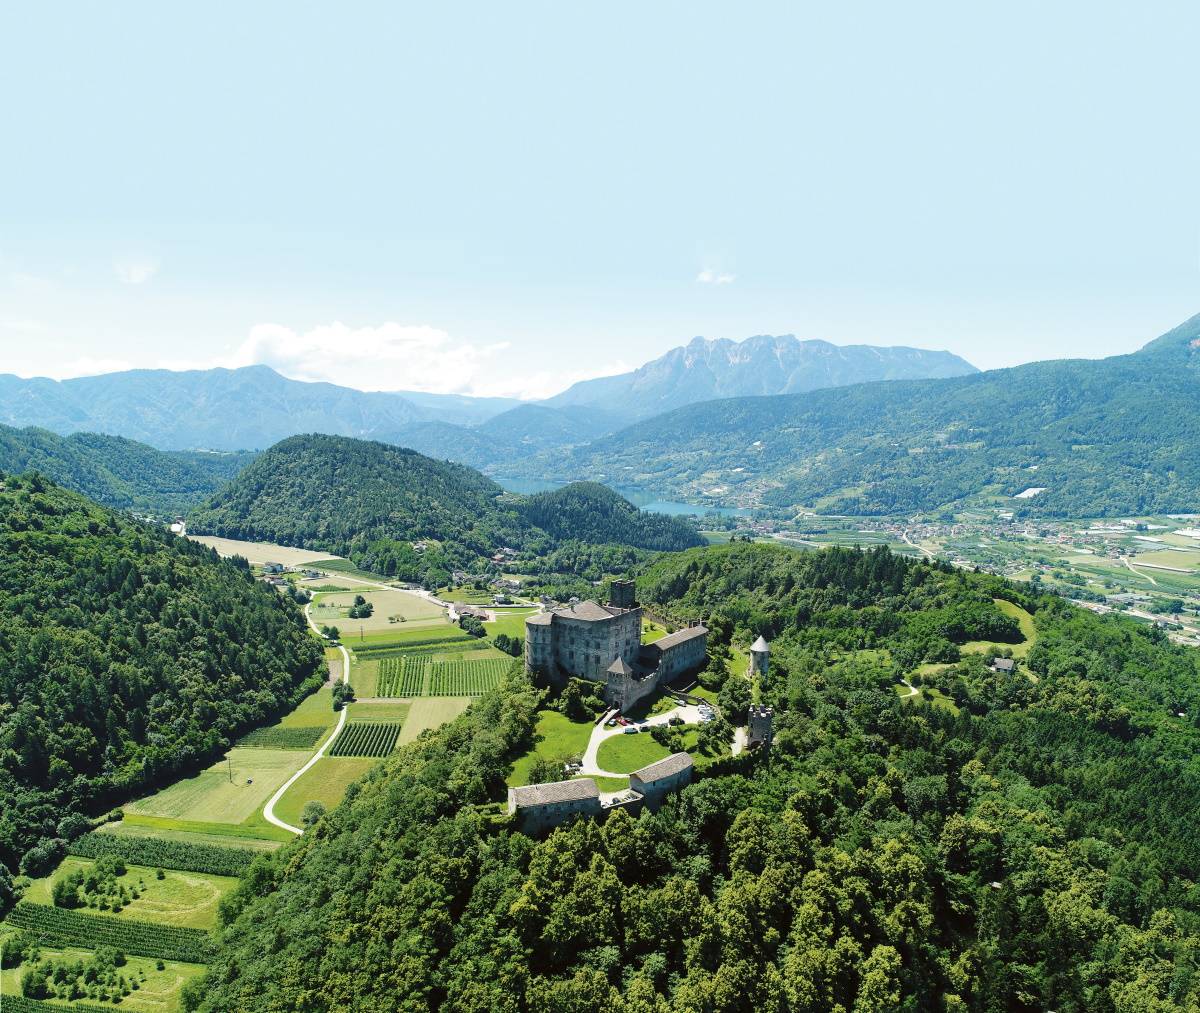 Dlaczego warto pojechać do Trentino. Trentino zachwyca mikroklimatem Alp, rzymską kulturą, a także tradycją winiarską, bo to właśnie tu powstaje słynne wino musujące Trentodoc.